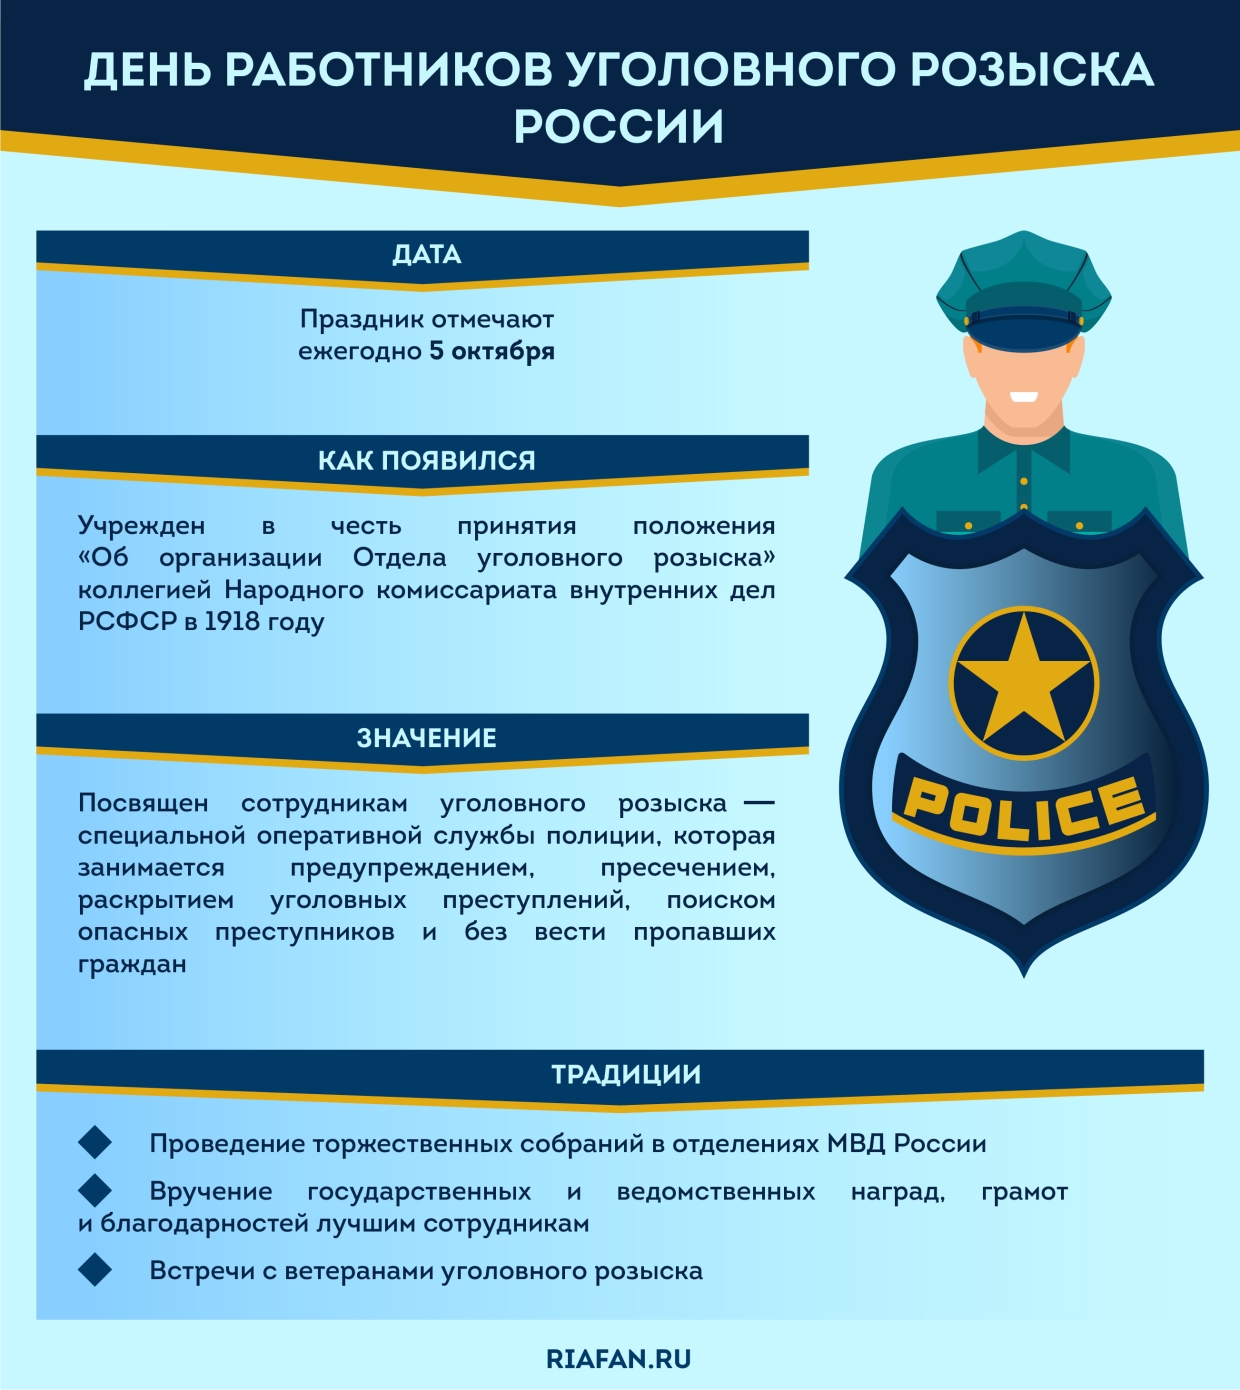 5 Октября день работников уголовного розыска России